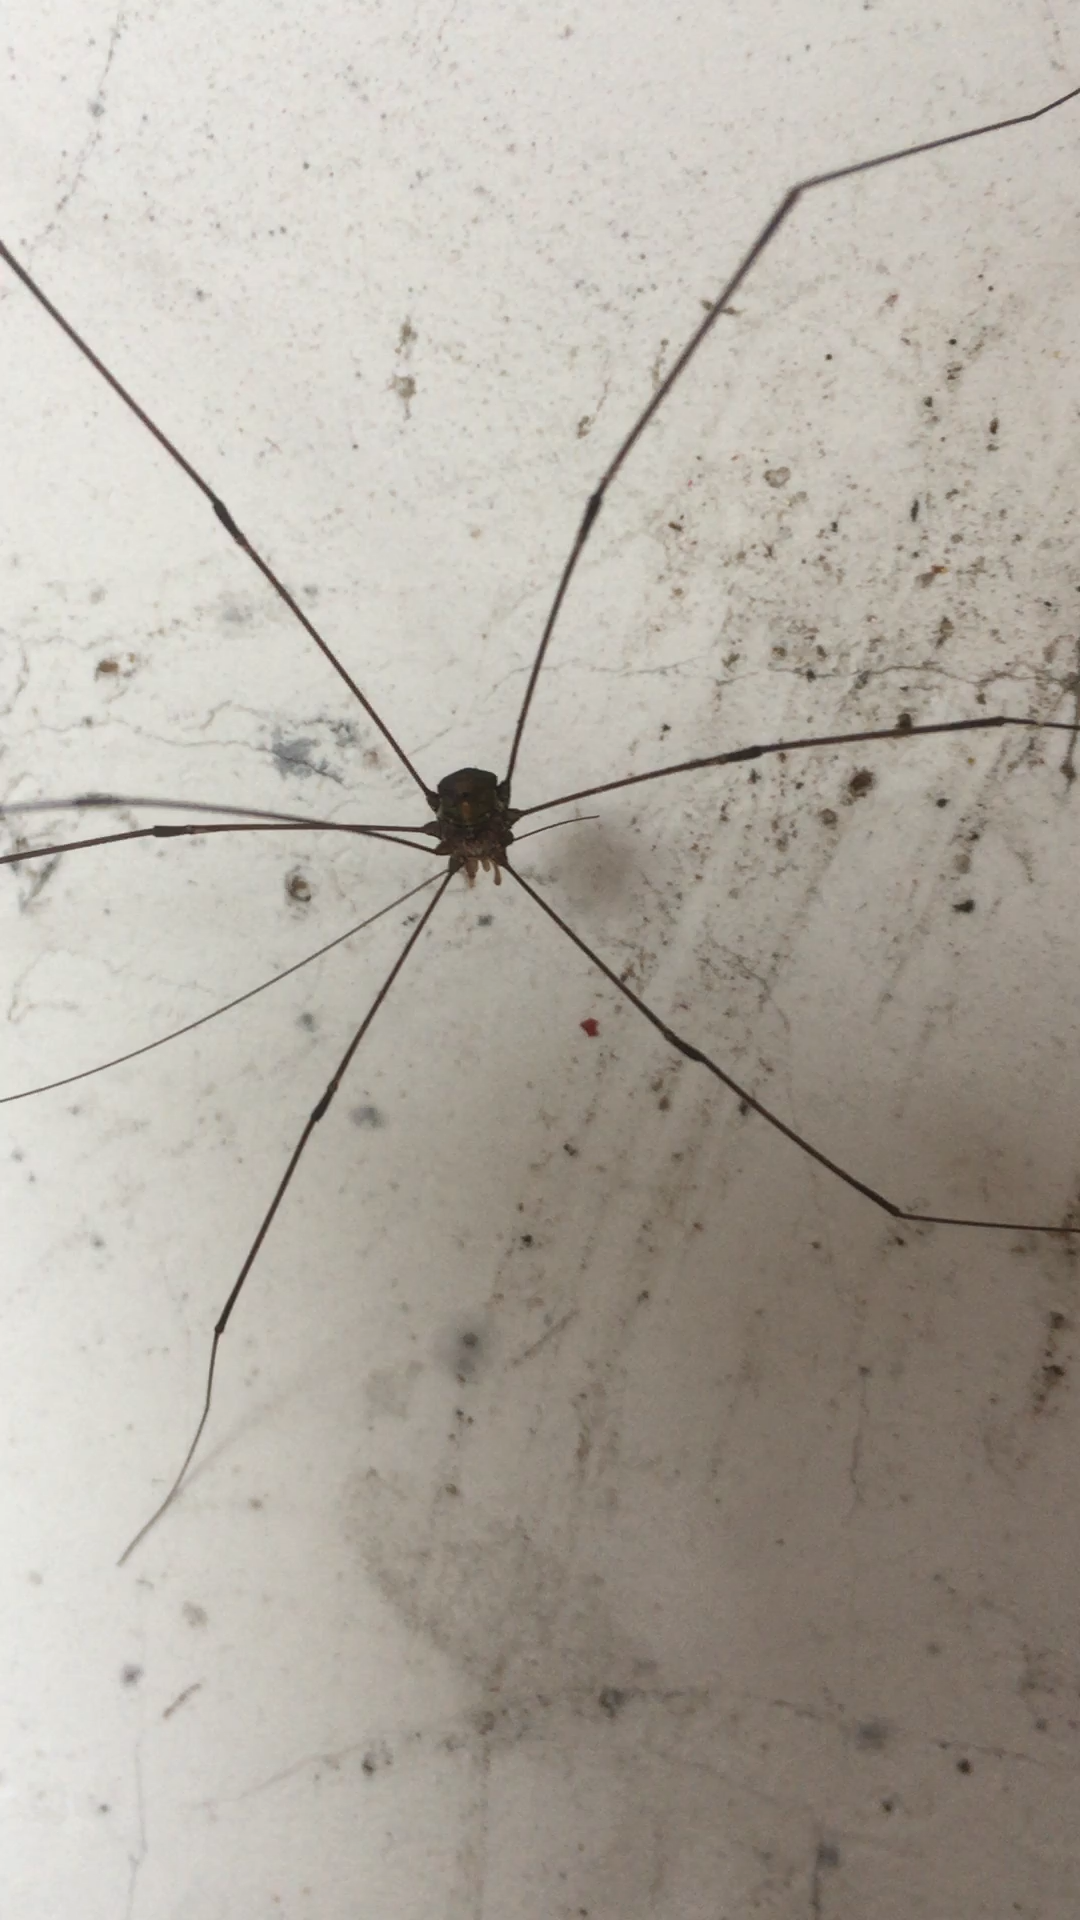 发现一只大长腿类蜘蛛生物,腿真的很长!有人知道学名吗?